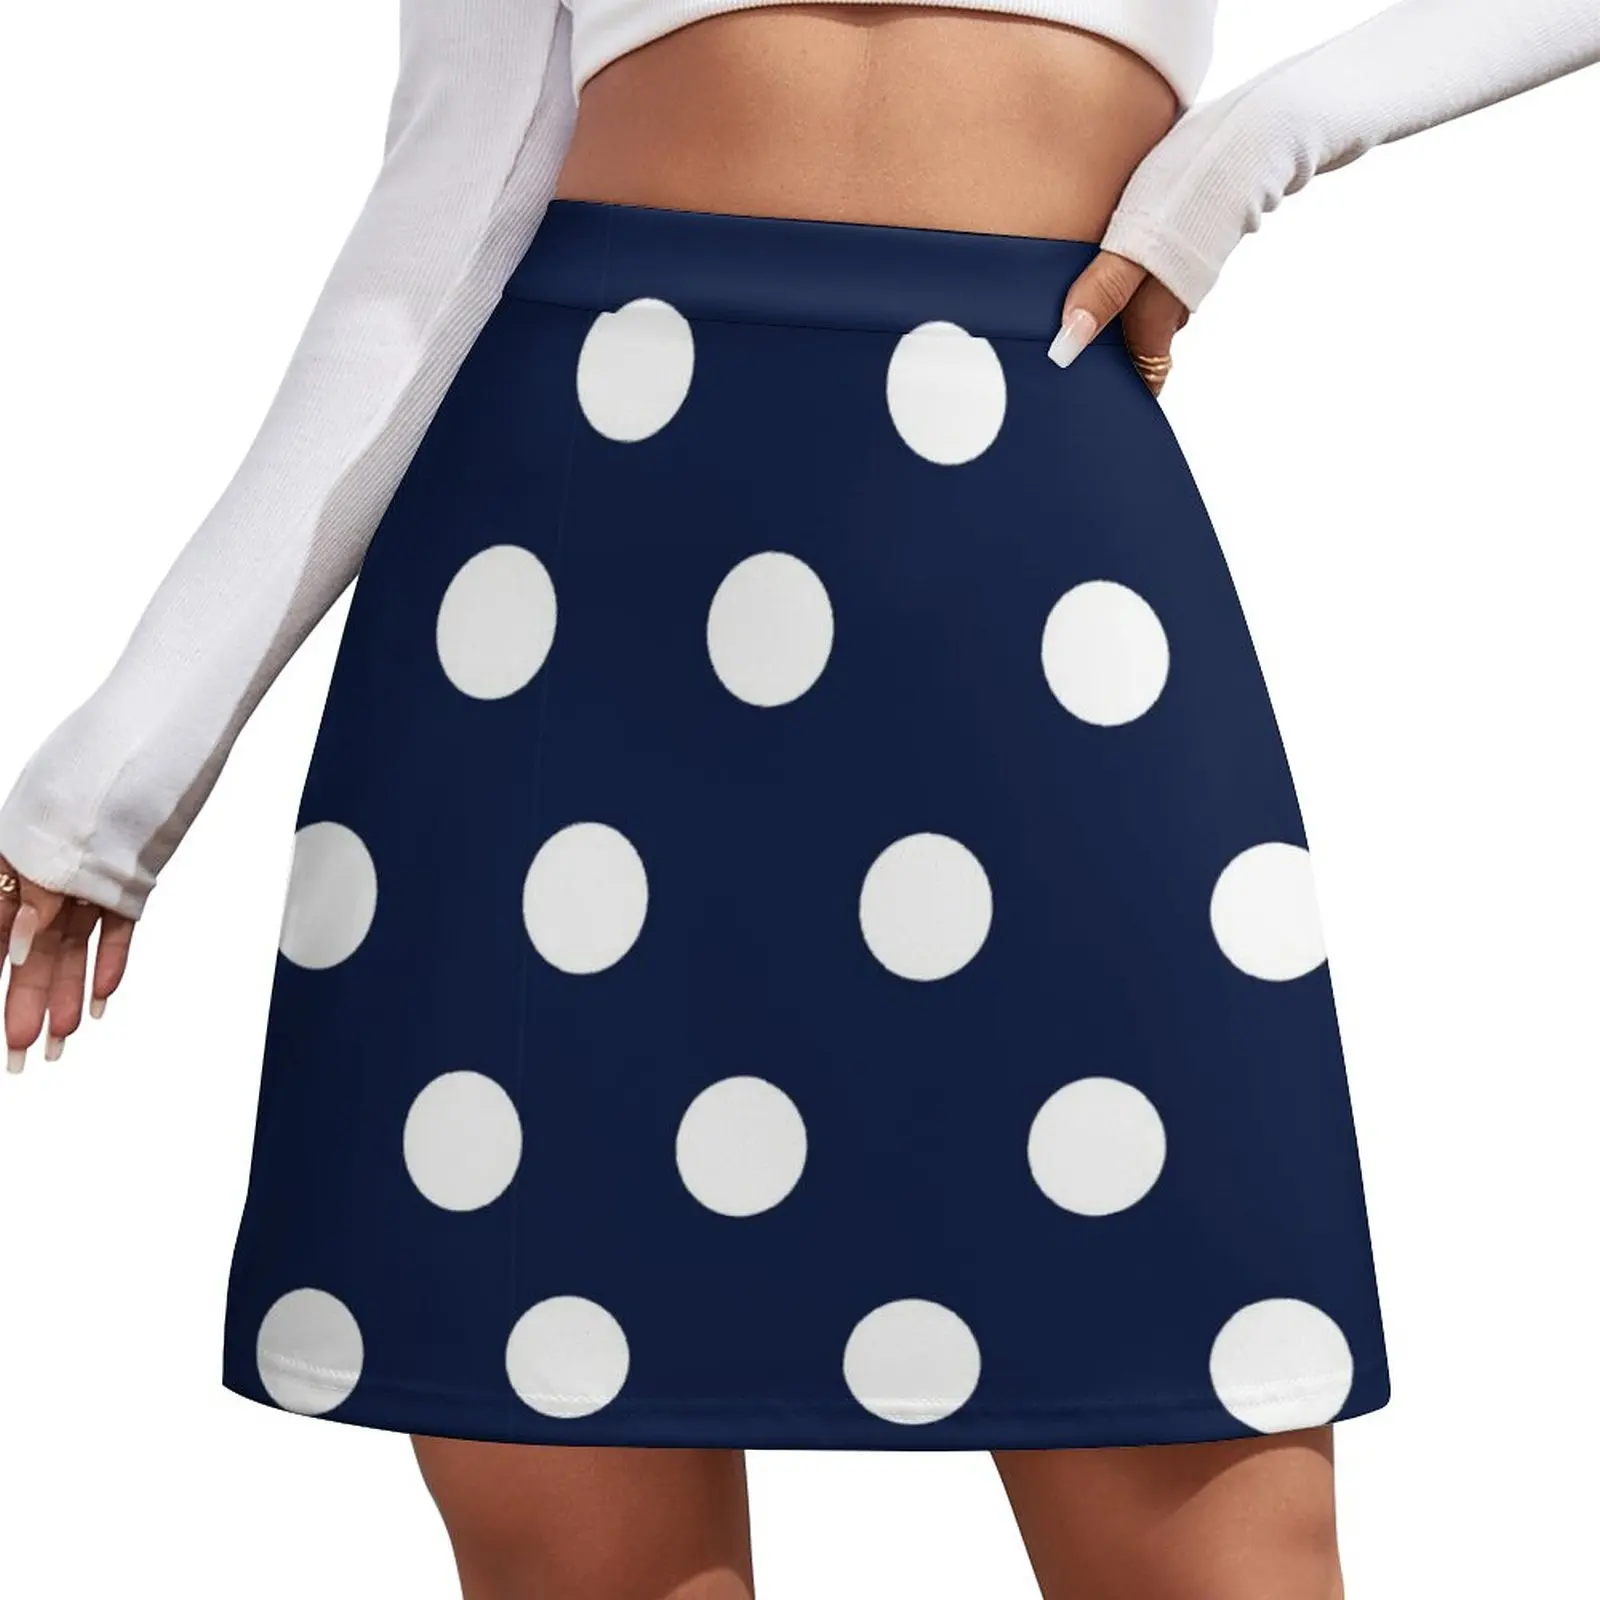 ic berlin dennis n large marine blue Navy Blue and White Large Polka Dot Mini Skirt Women's skirt Short women′s skirts